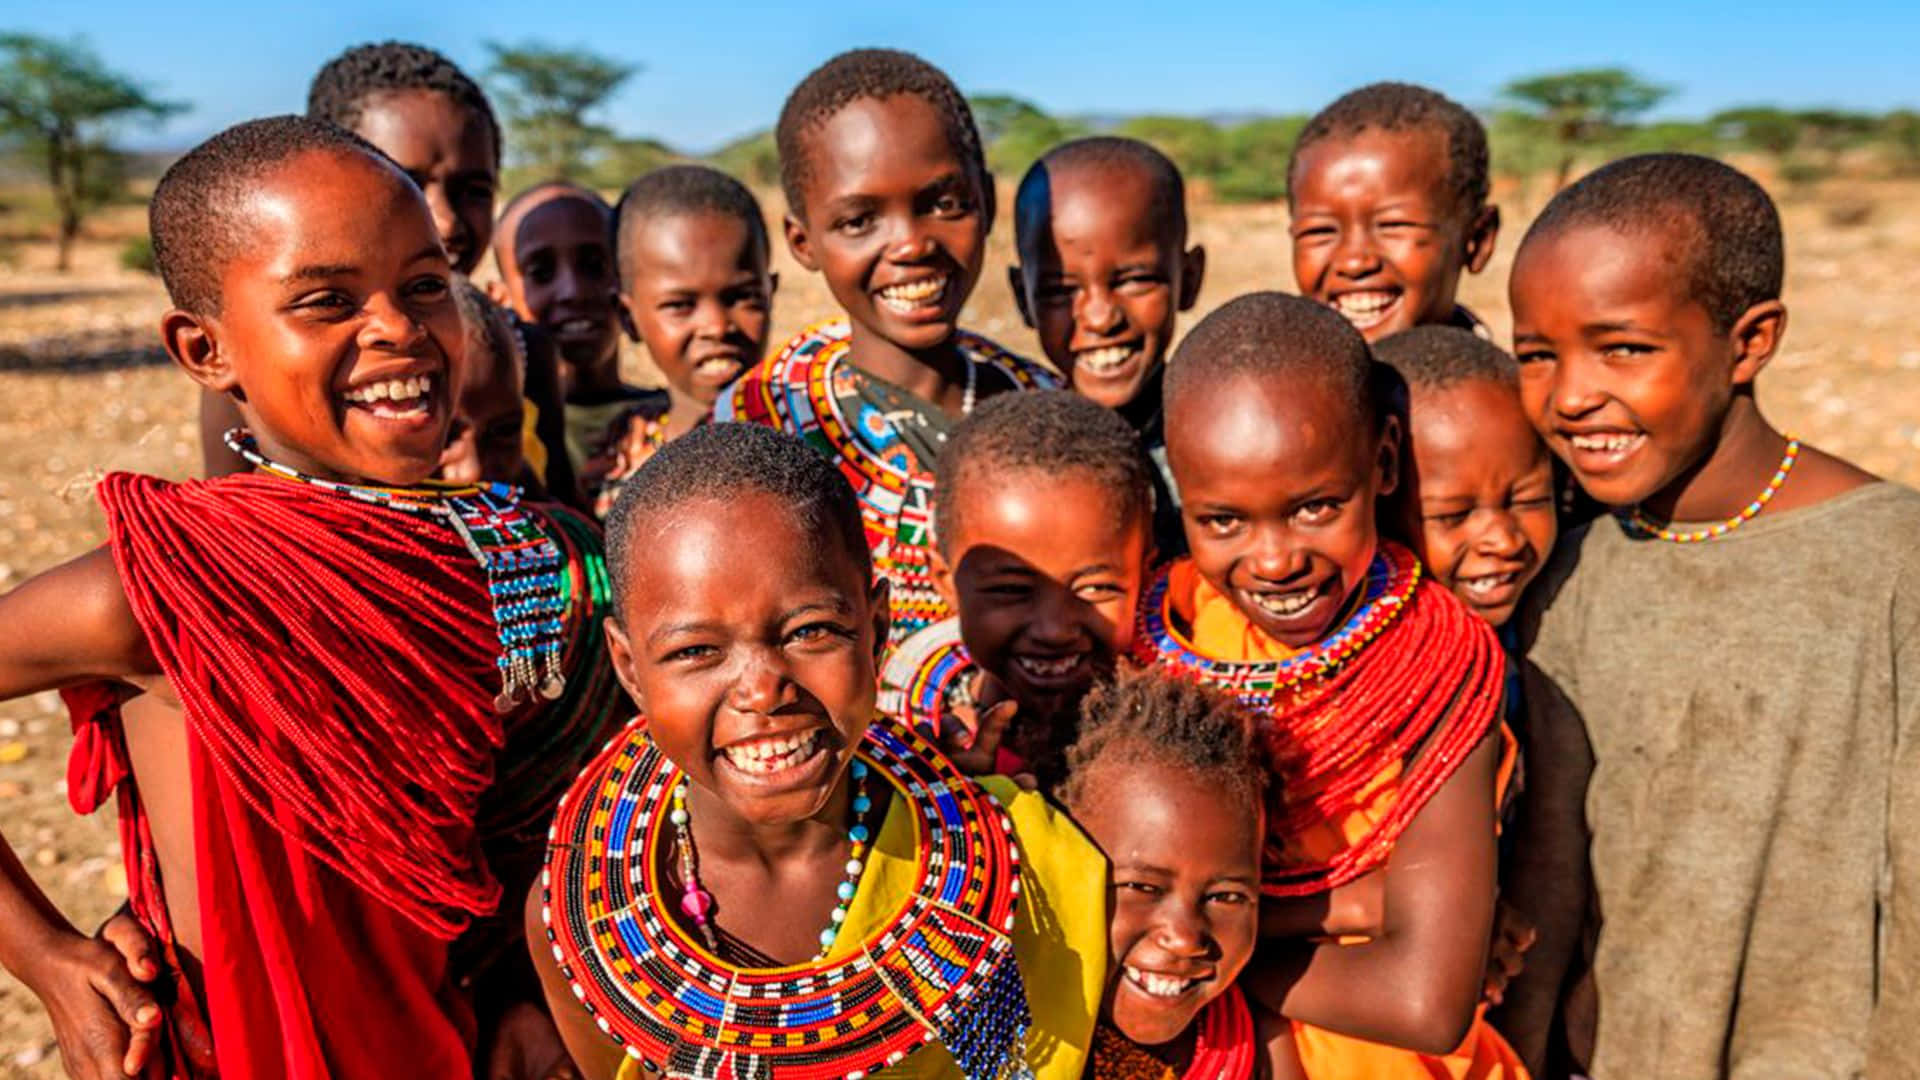 Einegruppe Von Kindern In Traditioneller Kleidung Lächelt.